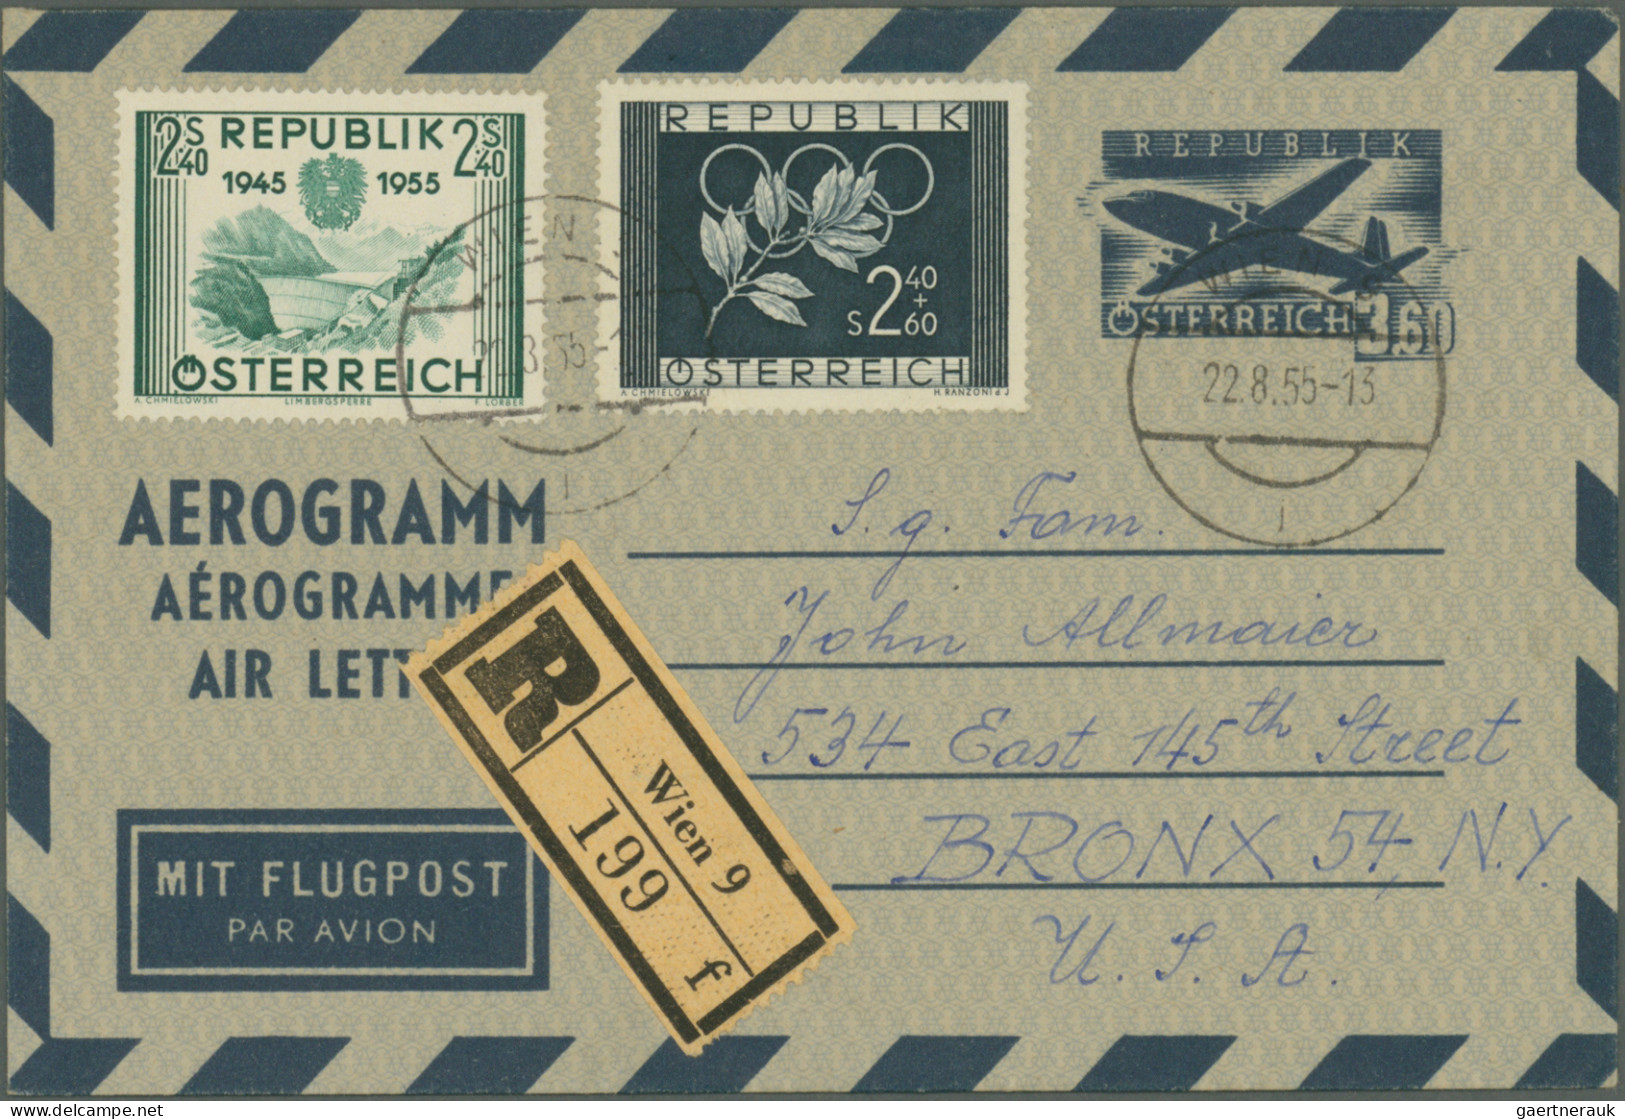 Österreich - Flugpost: 1927/1978, umfangreiche und vielseitig strukturierte Samm